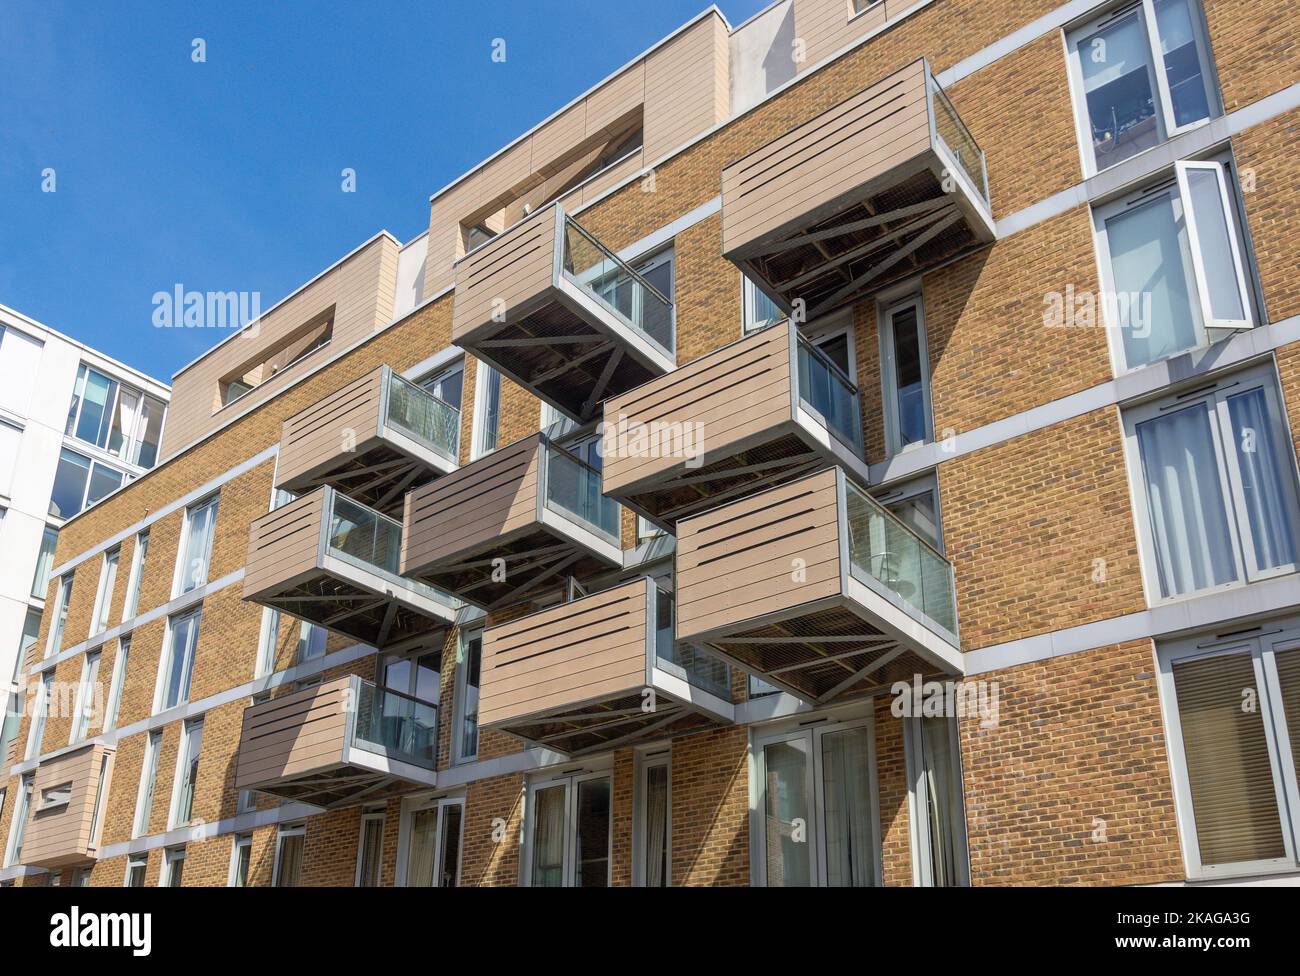 Balcons en saillie sur l'immeuble Axis court, East Lane, Bermondsey, London Borough of Southwark, Greater London, Angleterre, Royaume-Uni Banque D'Images